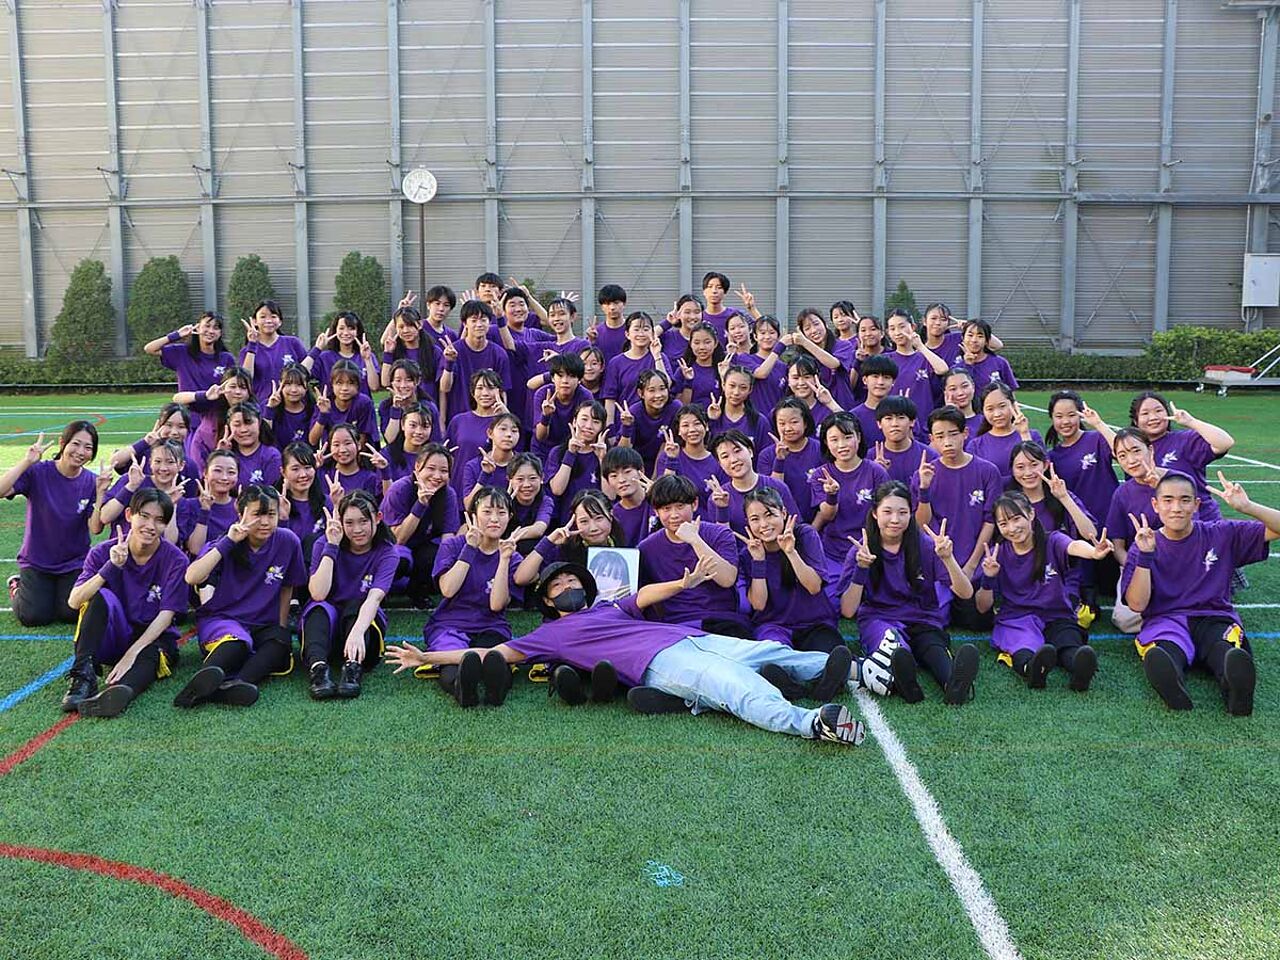 紫のTシャツを着ているダンス部の部員たちの集合写真